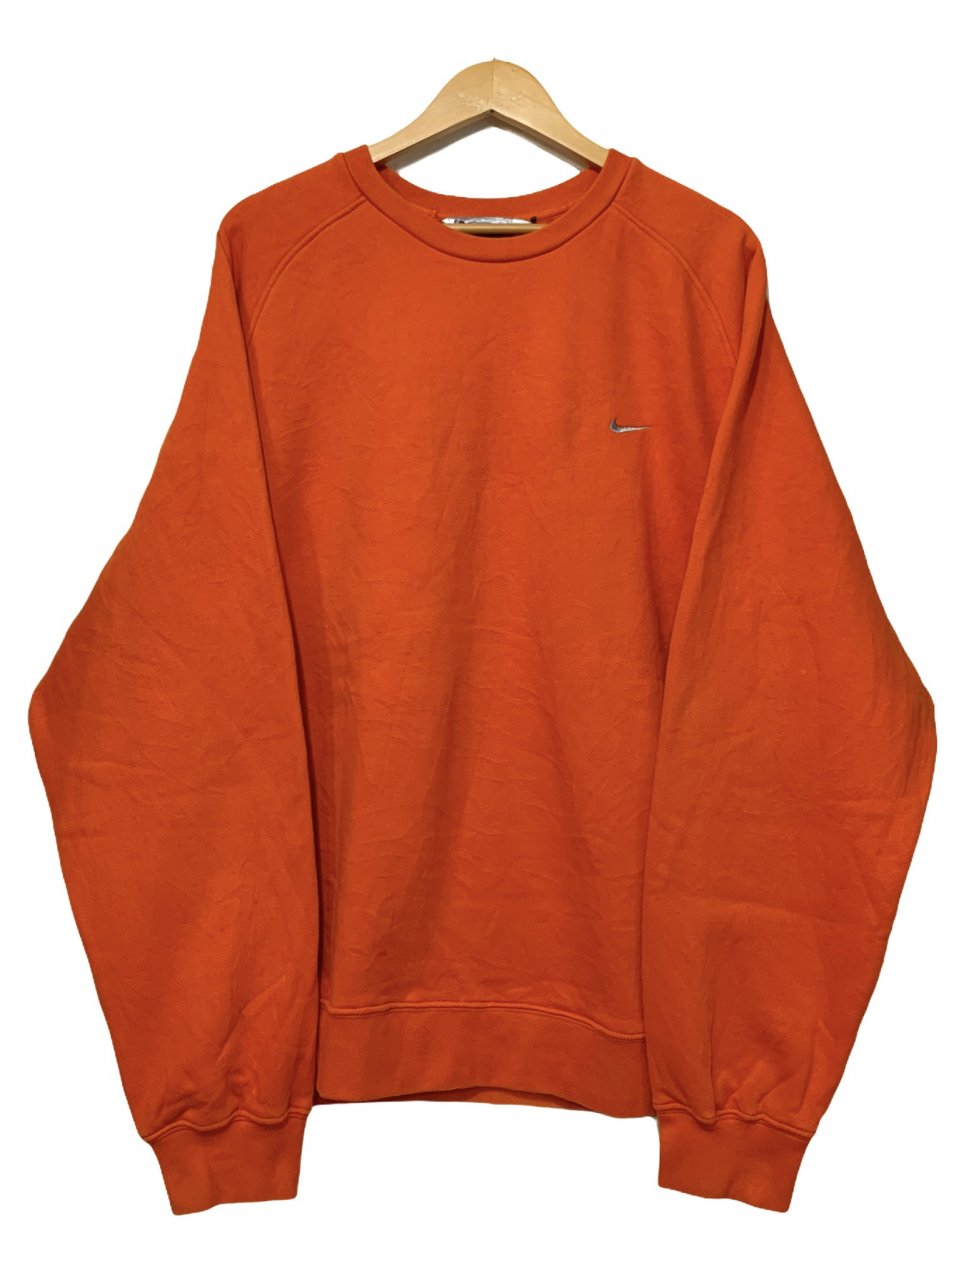 05年製 NIKE Logo Sweatshirt オレンジ XL 00s ナイキ スウェット 